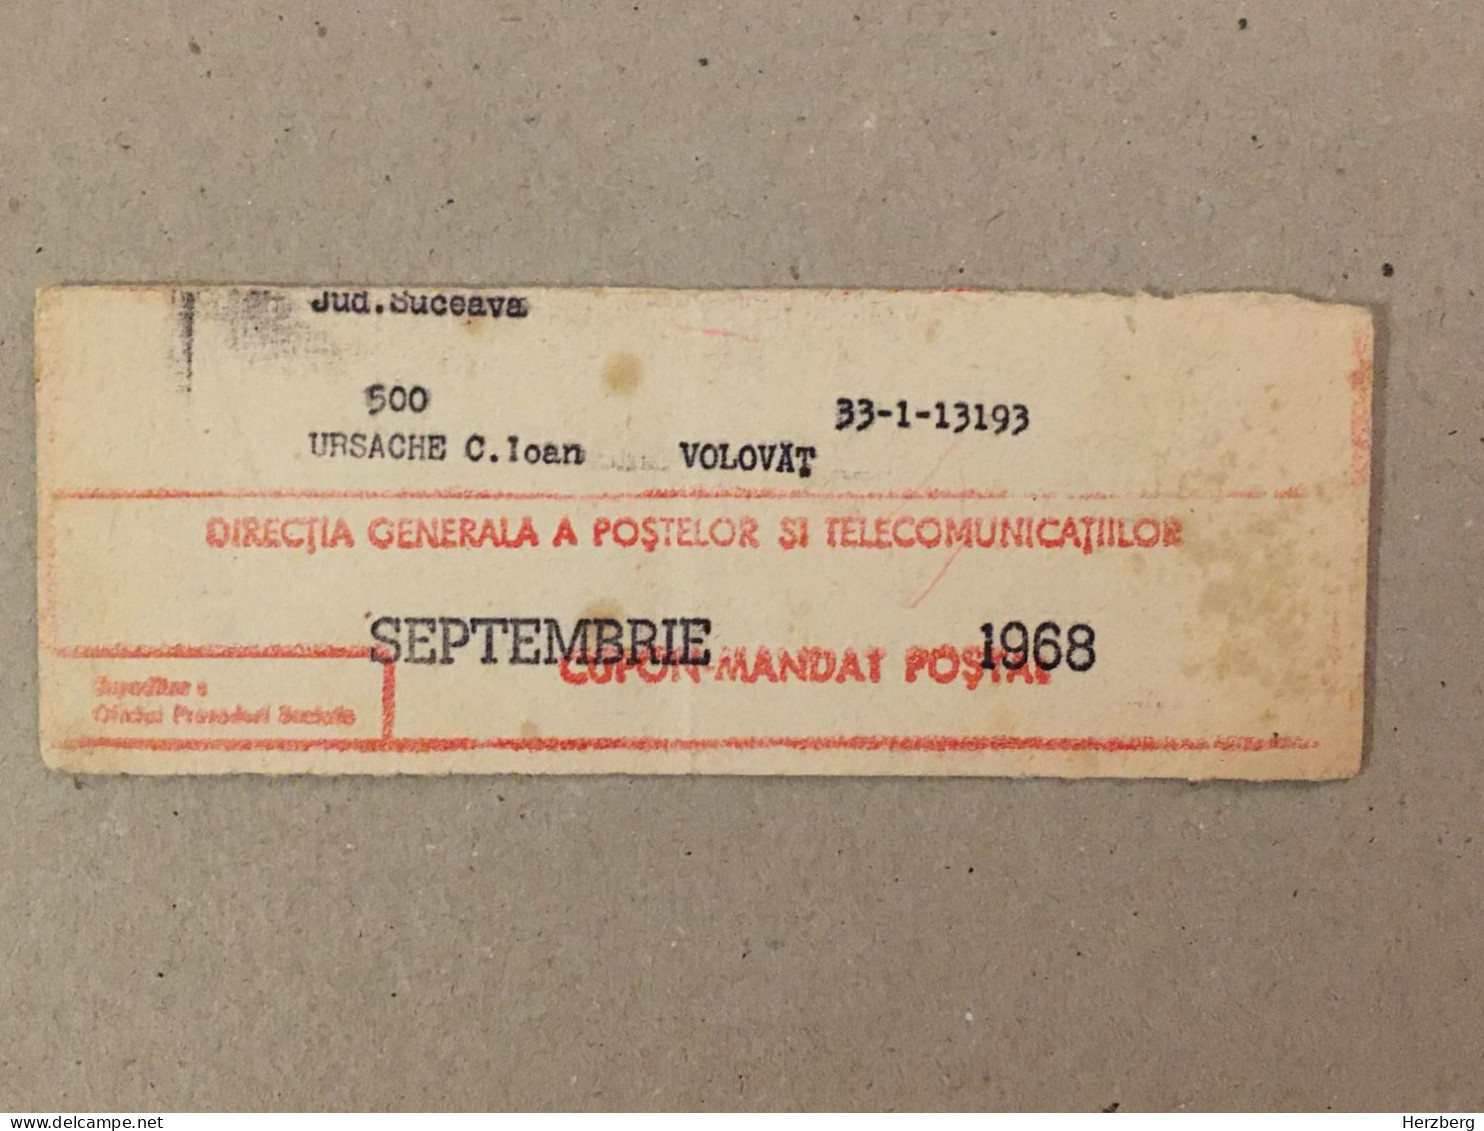 Romania Rumanien Roumanie - Cupon Mandat Postal Coupon Mandate Postauftrag - Suceava 1968 - Lettres & Documents